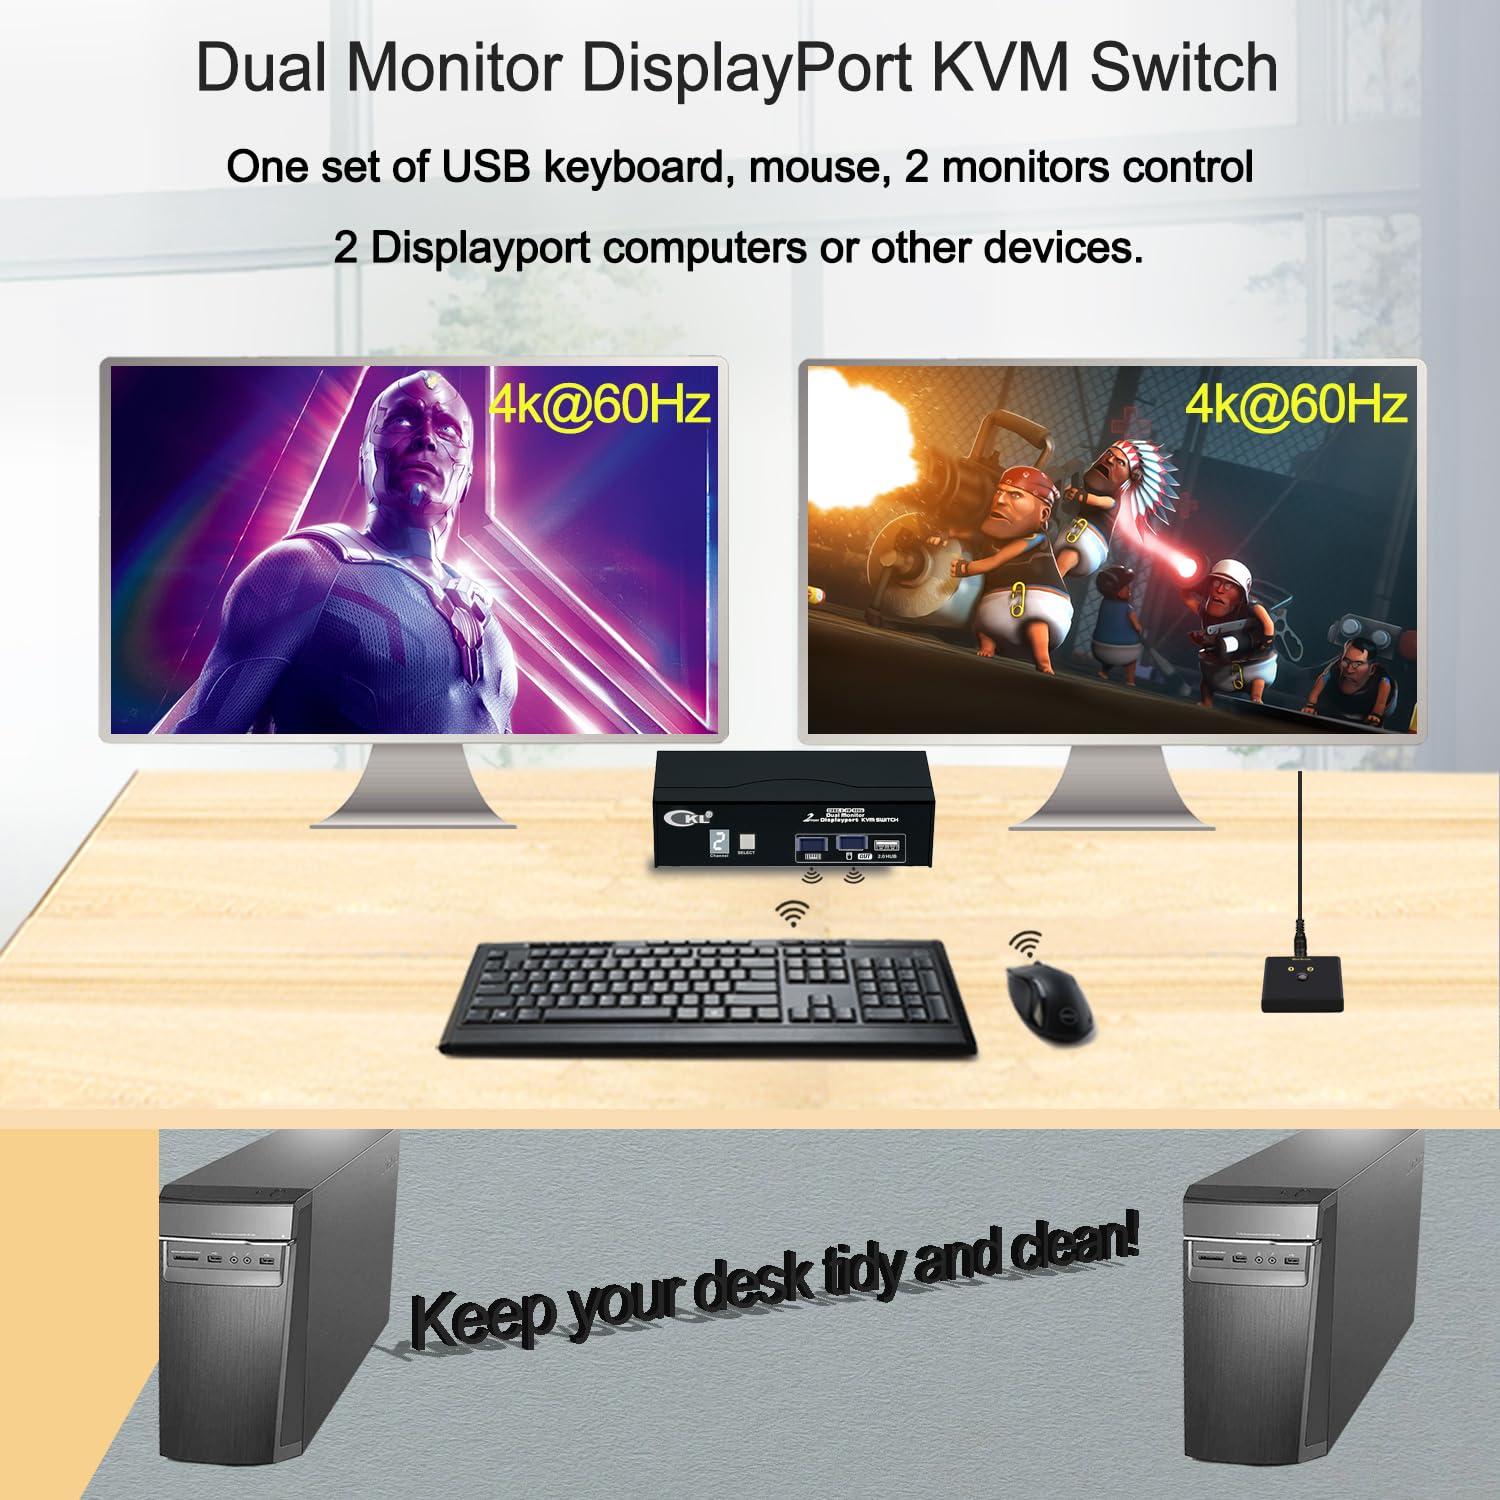 CKL 2 Port USB2.0 KVM Switch Dual Monitor DisplayPort 4K 60Hz 2 Computers x 2  Monitors KVM Switch with USB 2.0 HUB DP1.2(322D-2) 2x2 USB2 DP1.2 KVM 4K